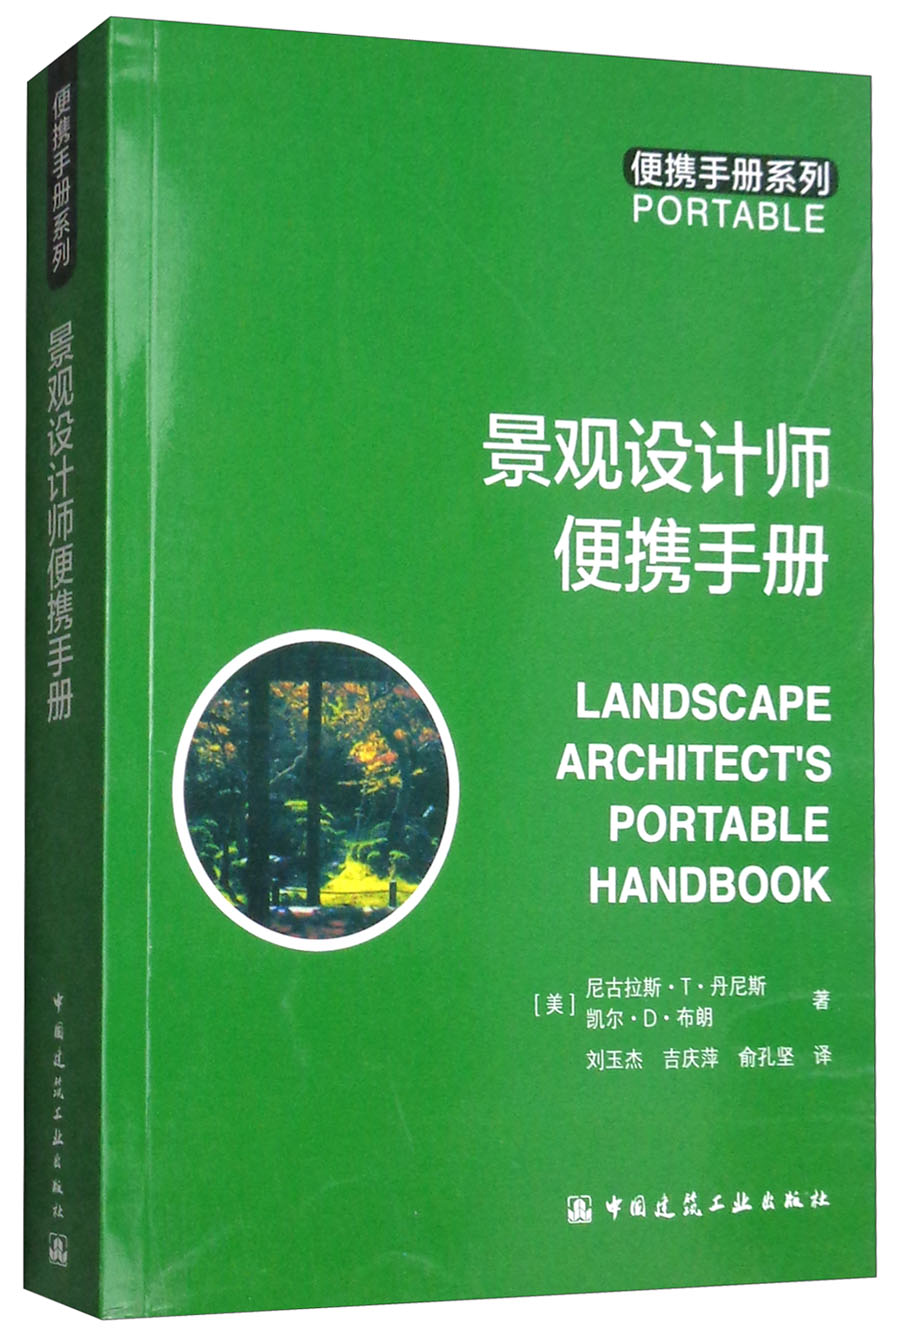 景观设计师便携手册 azw3格式下载